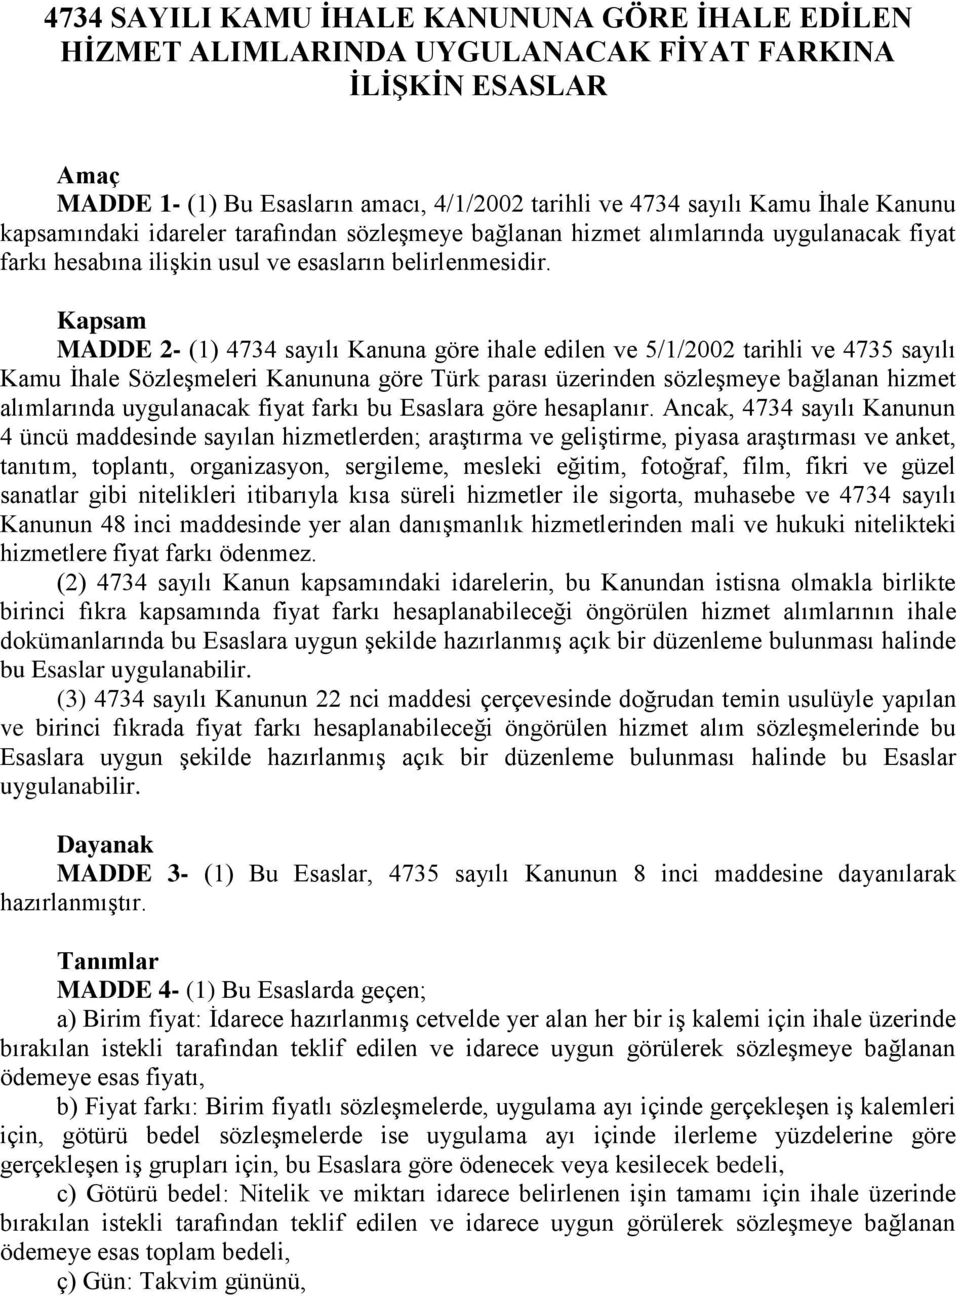 Kapsam MADDE 2- (1) 4734 sayılı Kanuna göre ihale edilen ve 5/1/2002 tarihli ve 4735 sayılı Kamu İhale Sözleşmeleri Kanununa göre Türk parası üzerinden sözleşmeye bağlanan hizmet alımlarında